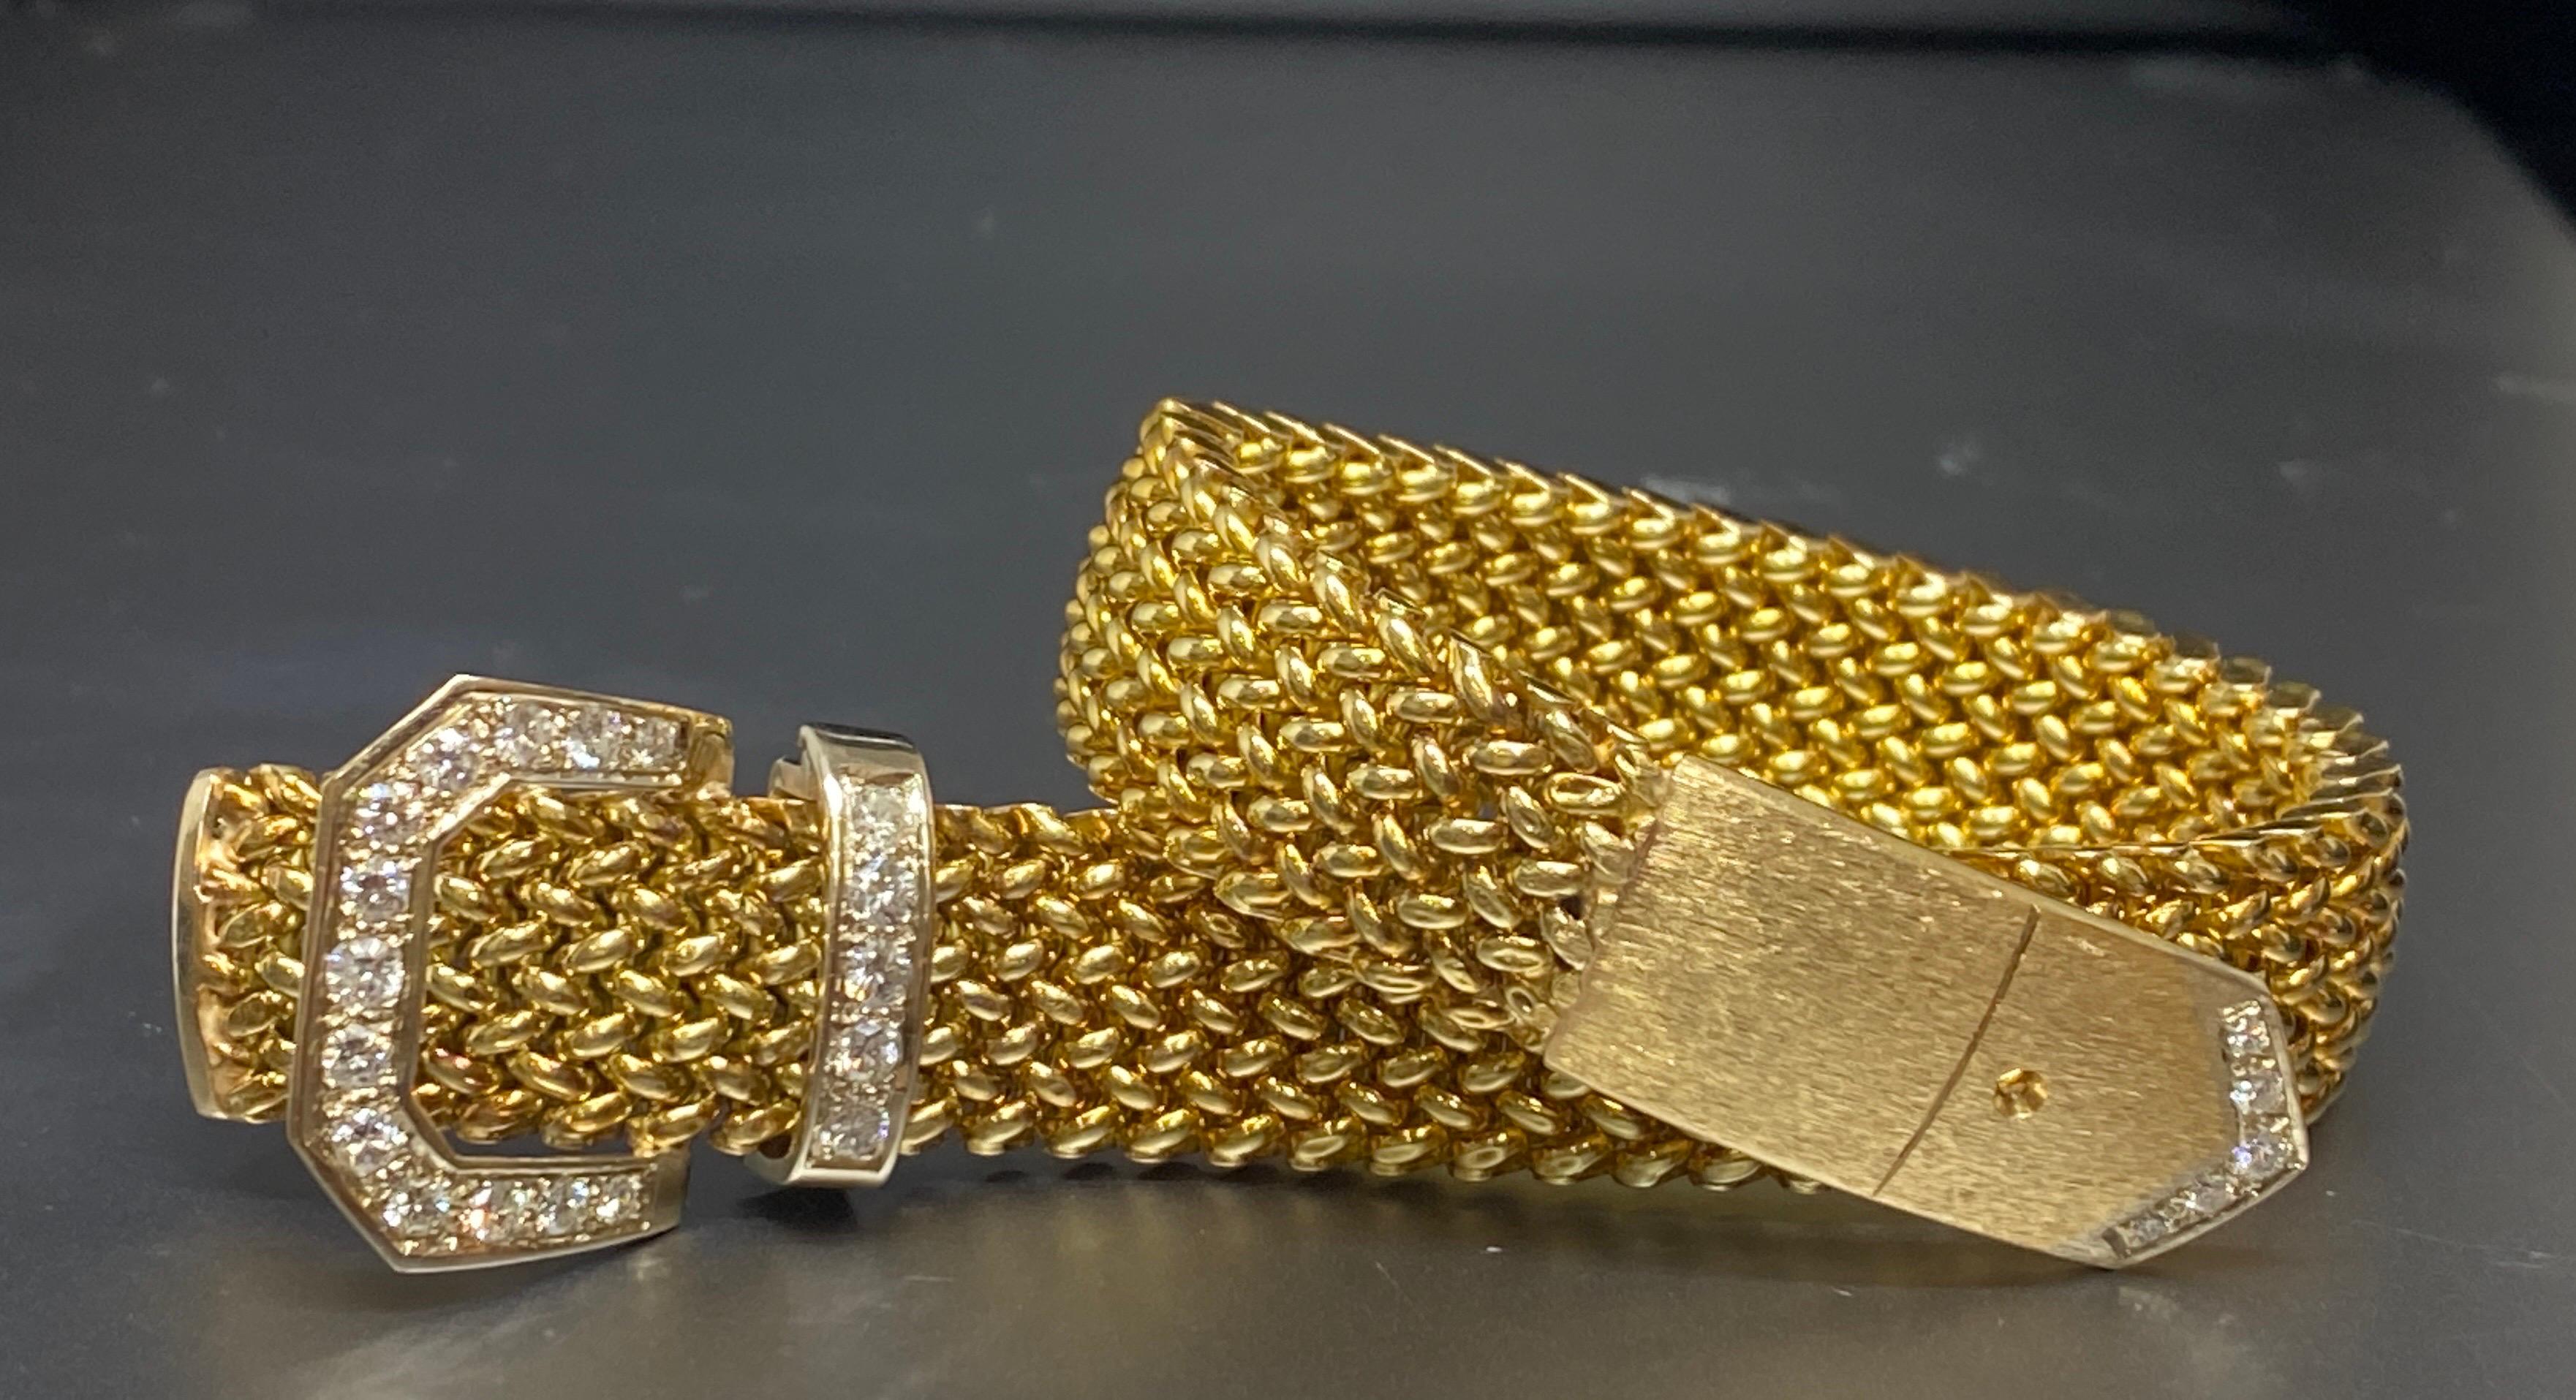 Up&Up vous propose ce superbe bracelet vintage en or jaune 14 carats à maille tressée et diamants. Ce bracelet à boucle classique présente une bande de bracelet à maillons tissés en or jaune avec une extrémité finie en Florentine. Le fermoir à